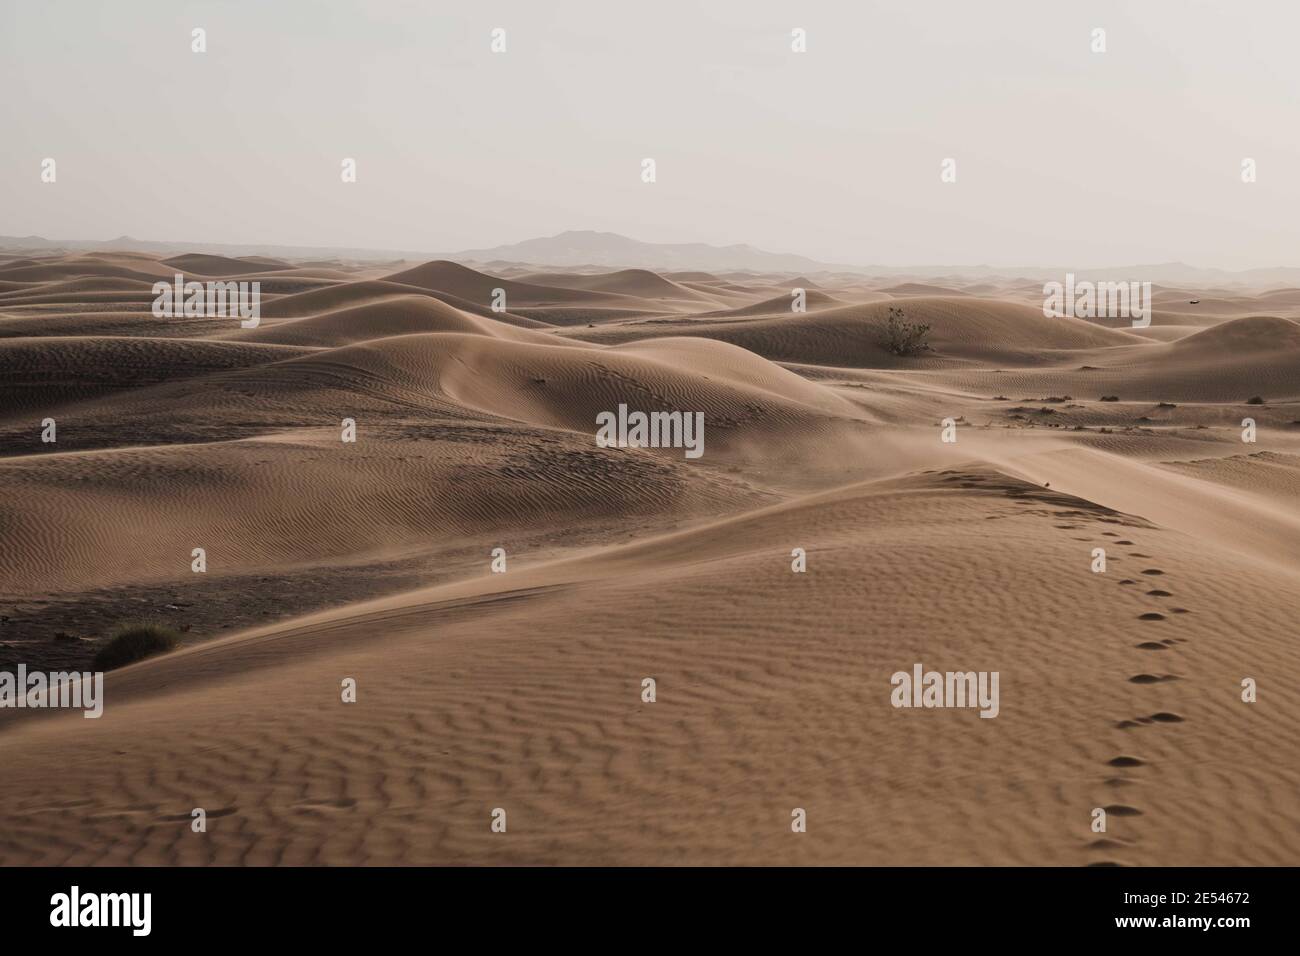 DUBAI, VEREINIGTE ARABISCHE EMIRATE - 01. Januar 2021: „Ich zitterte in diesen Solituden, als ich die Stimme des Salzes in der Wüste hörte.“― Pablo Neruda Stockfoto